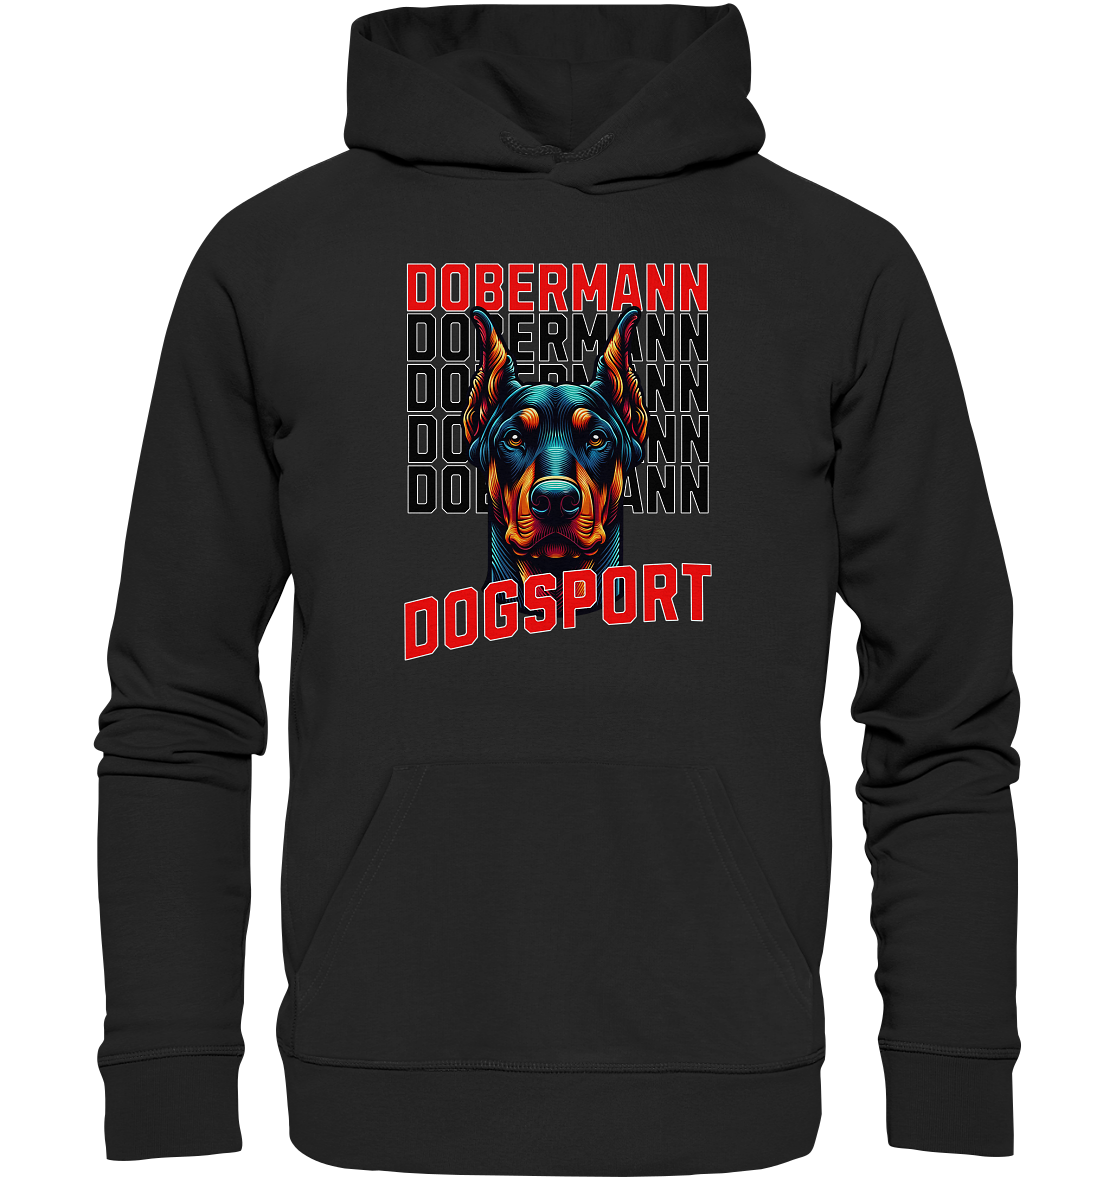 Dobermann Dogsport - Premium Unisex Hoodie